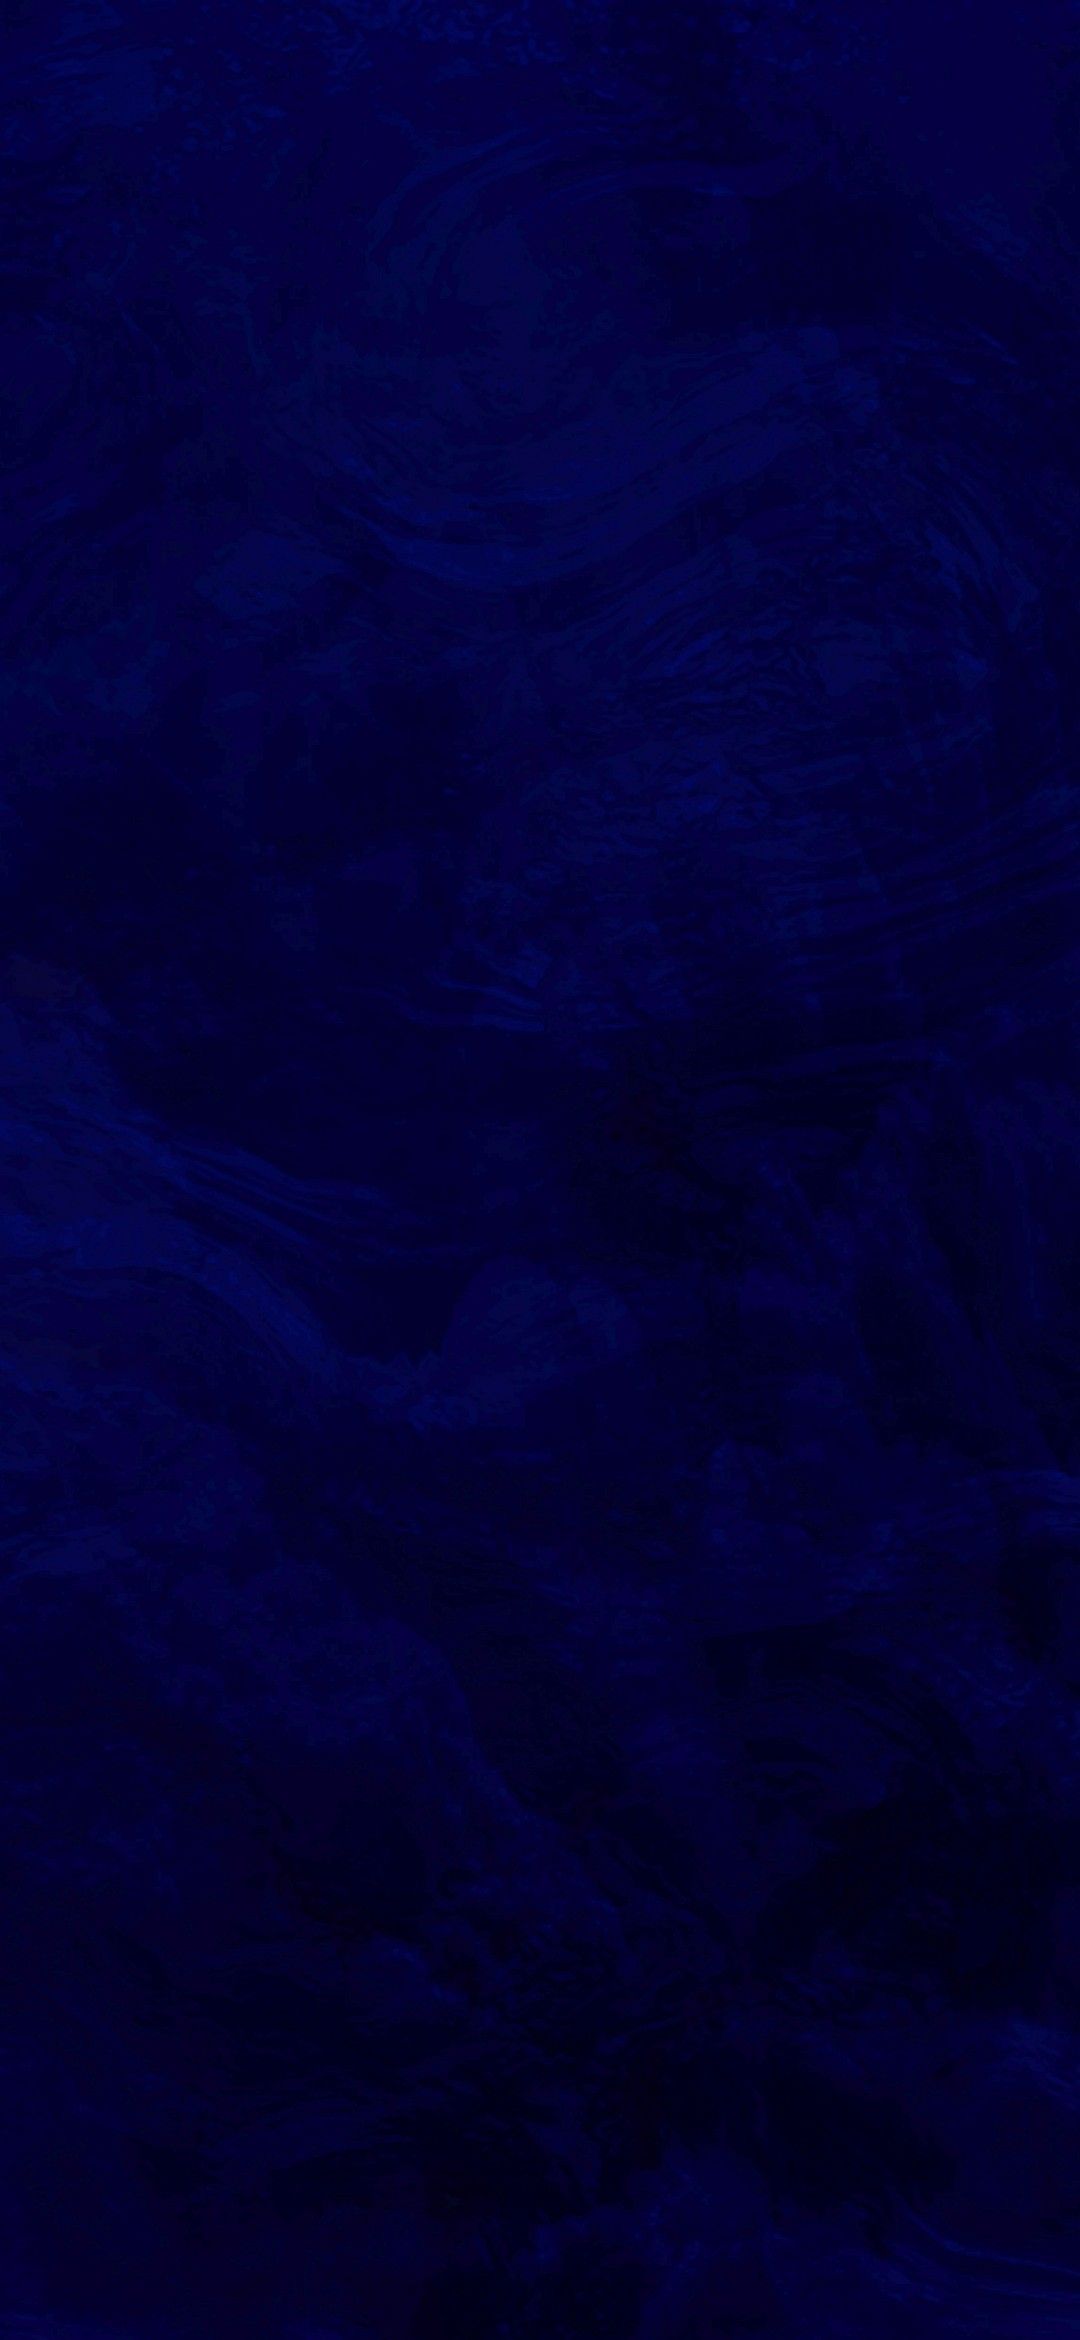 Dark blue. Dark blue wallpaper, Blue background wallpaper, Blue wallpaper iphone